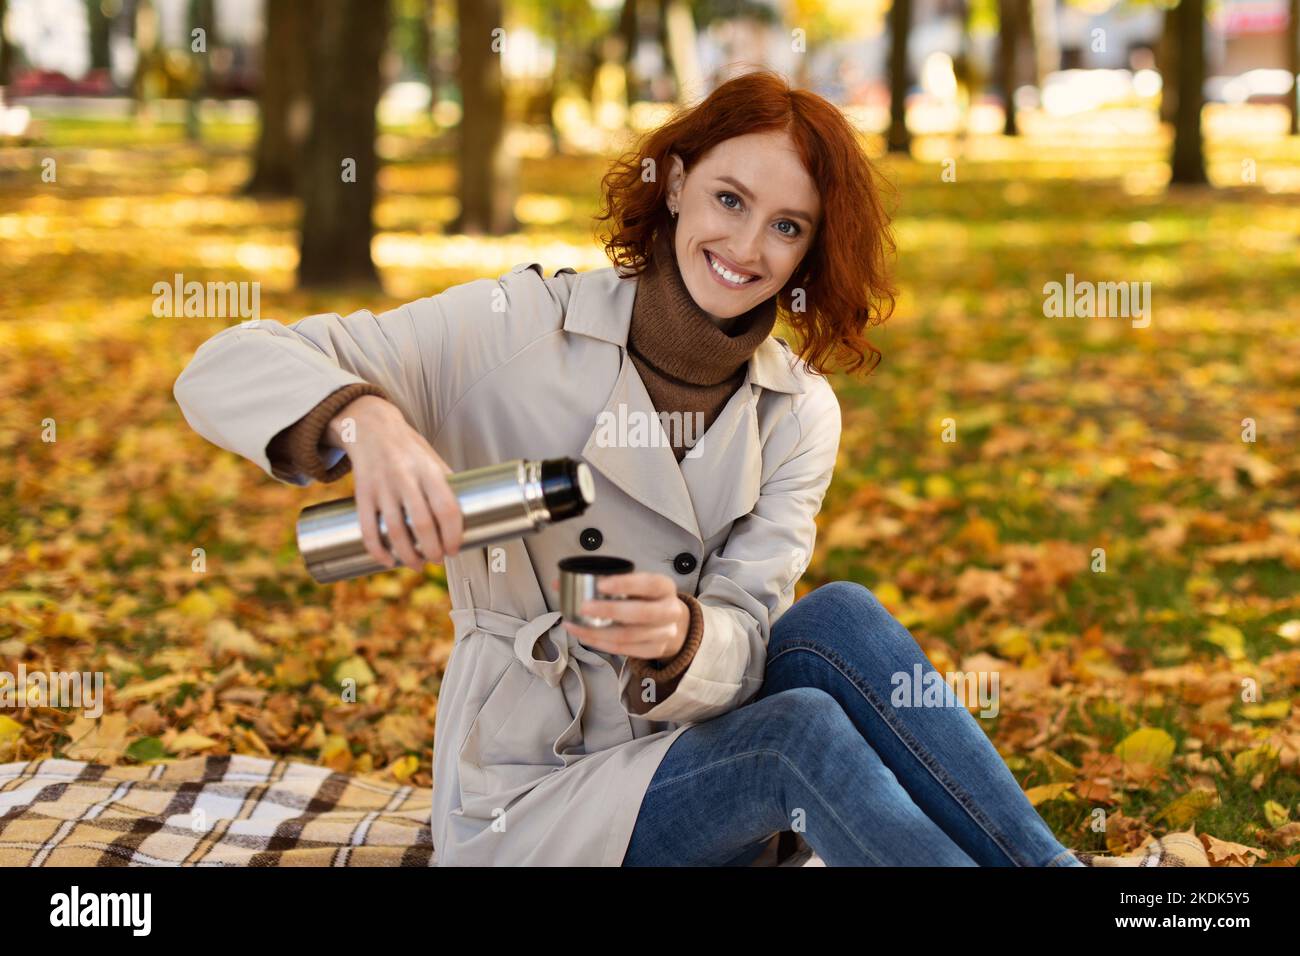 Lächelnd sitzt die hübsche kaukasische Millennials-Dame mit roten Haaren im Regenmantel auf kariert und gießt heißes Getränk aus Thermoskanne Stockfoto